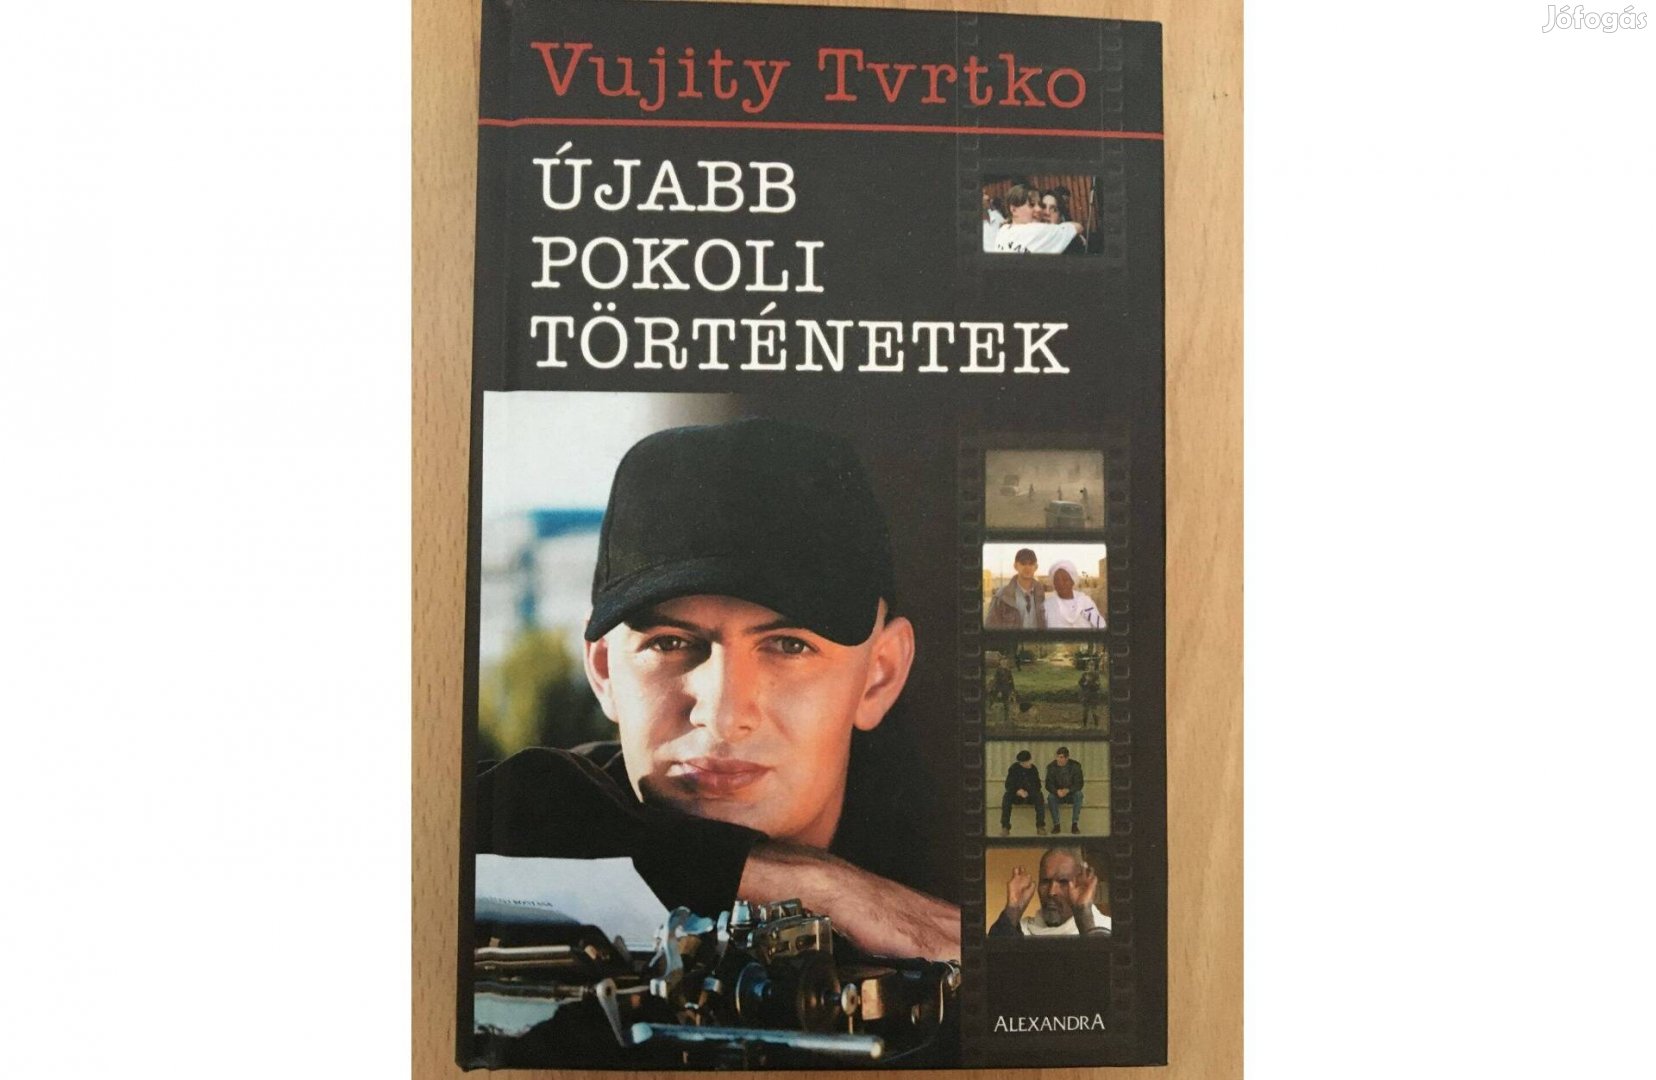 Vujity Tvrtko: Újabb pokoli történetek című könyve